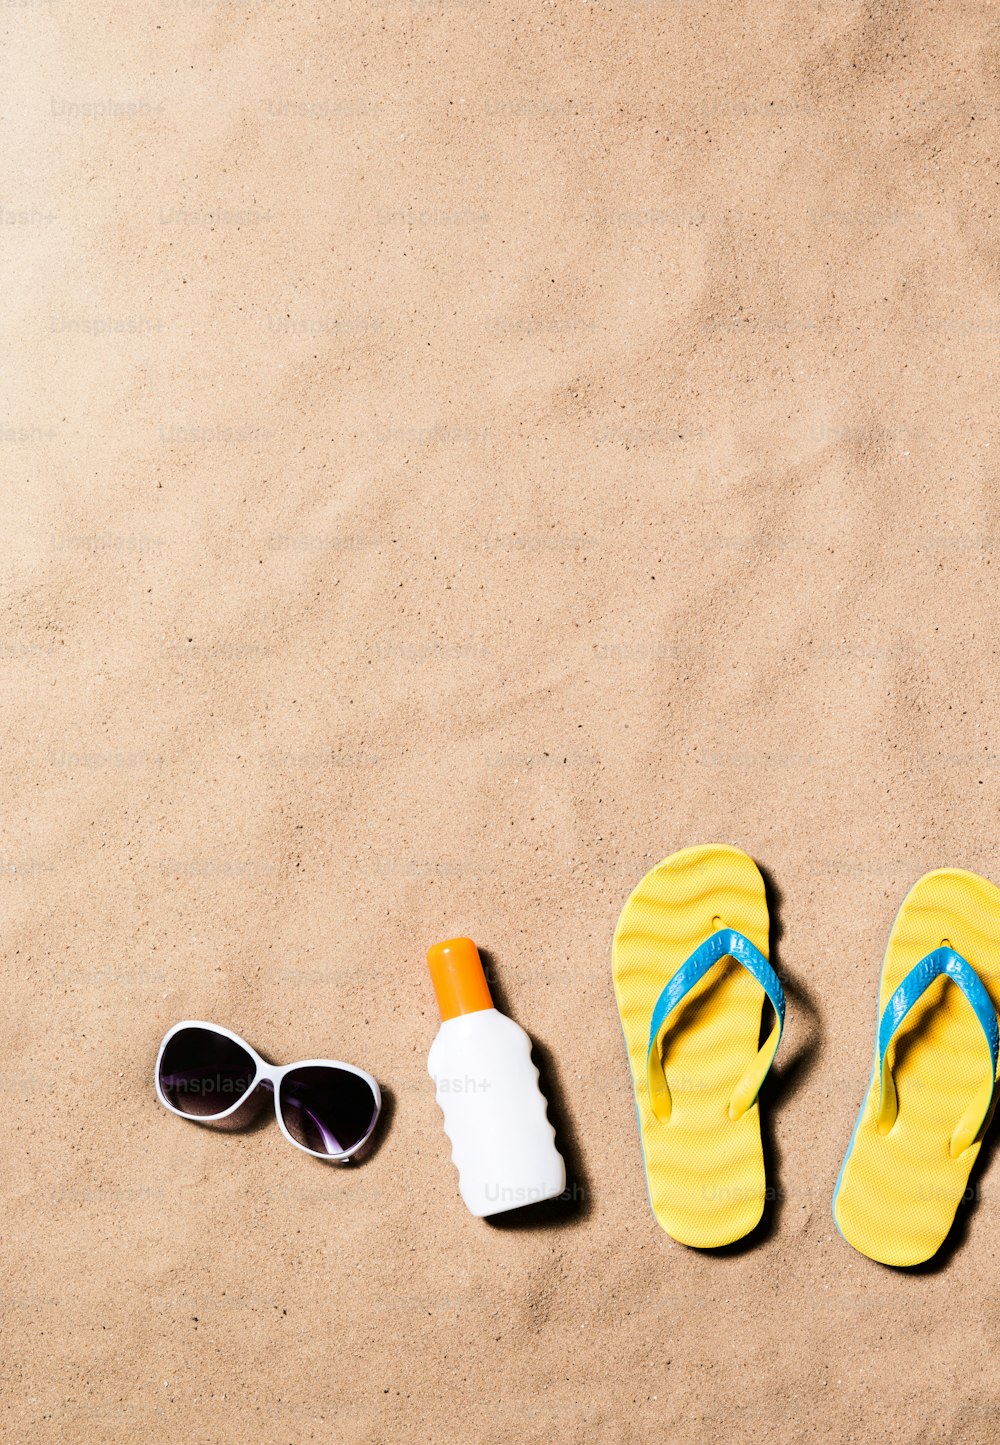 Sommerurlaubskomposition mit einem Paar gelber Flip-Flop-Sandalen, Sonnenbrille und Sonnencreme am Strand. Sandstrand Hintergrund, Studioaufnahme, flache Liege. Speicherplatz kopieren.